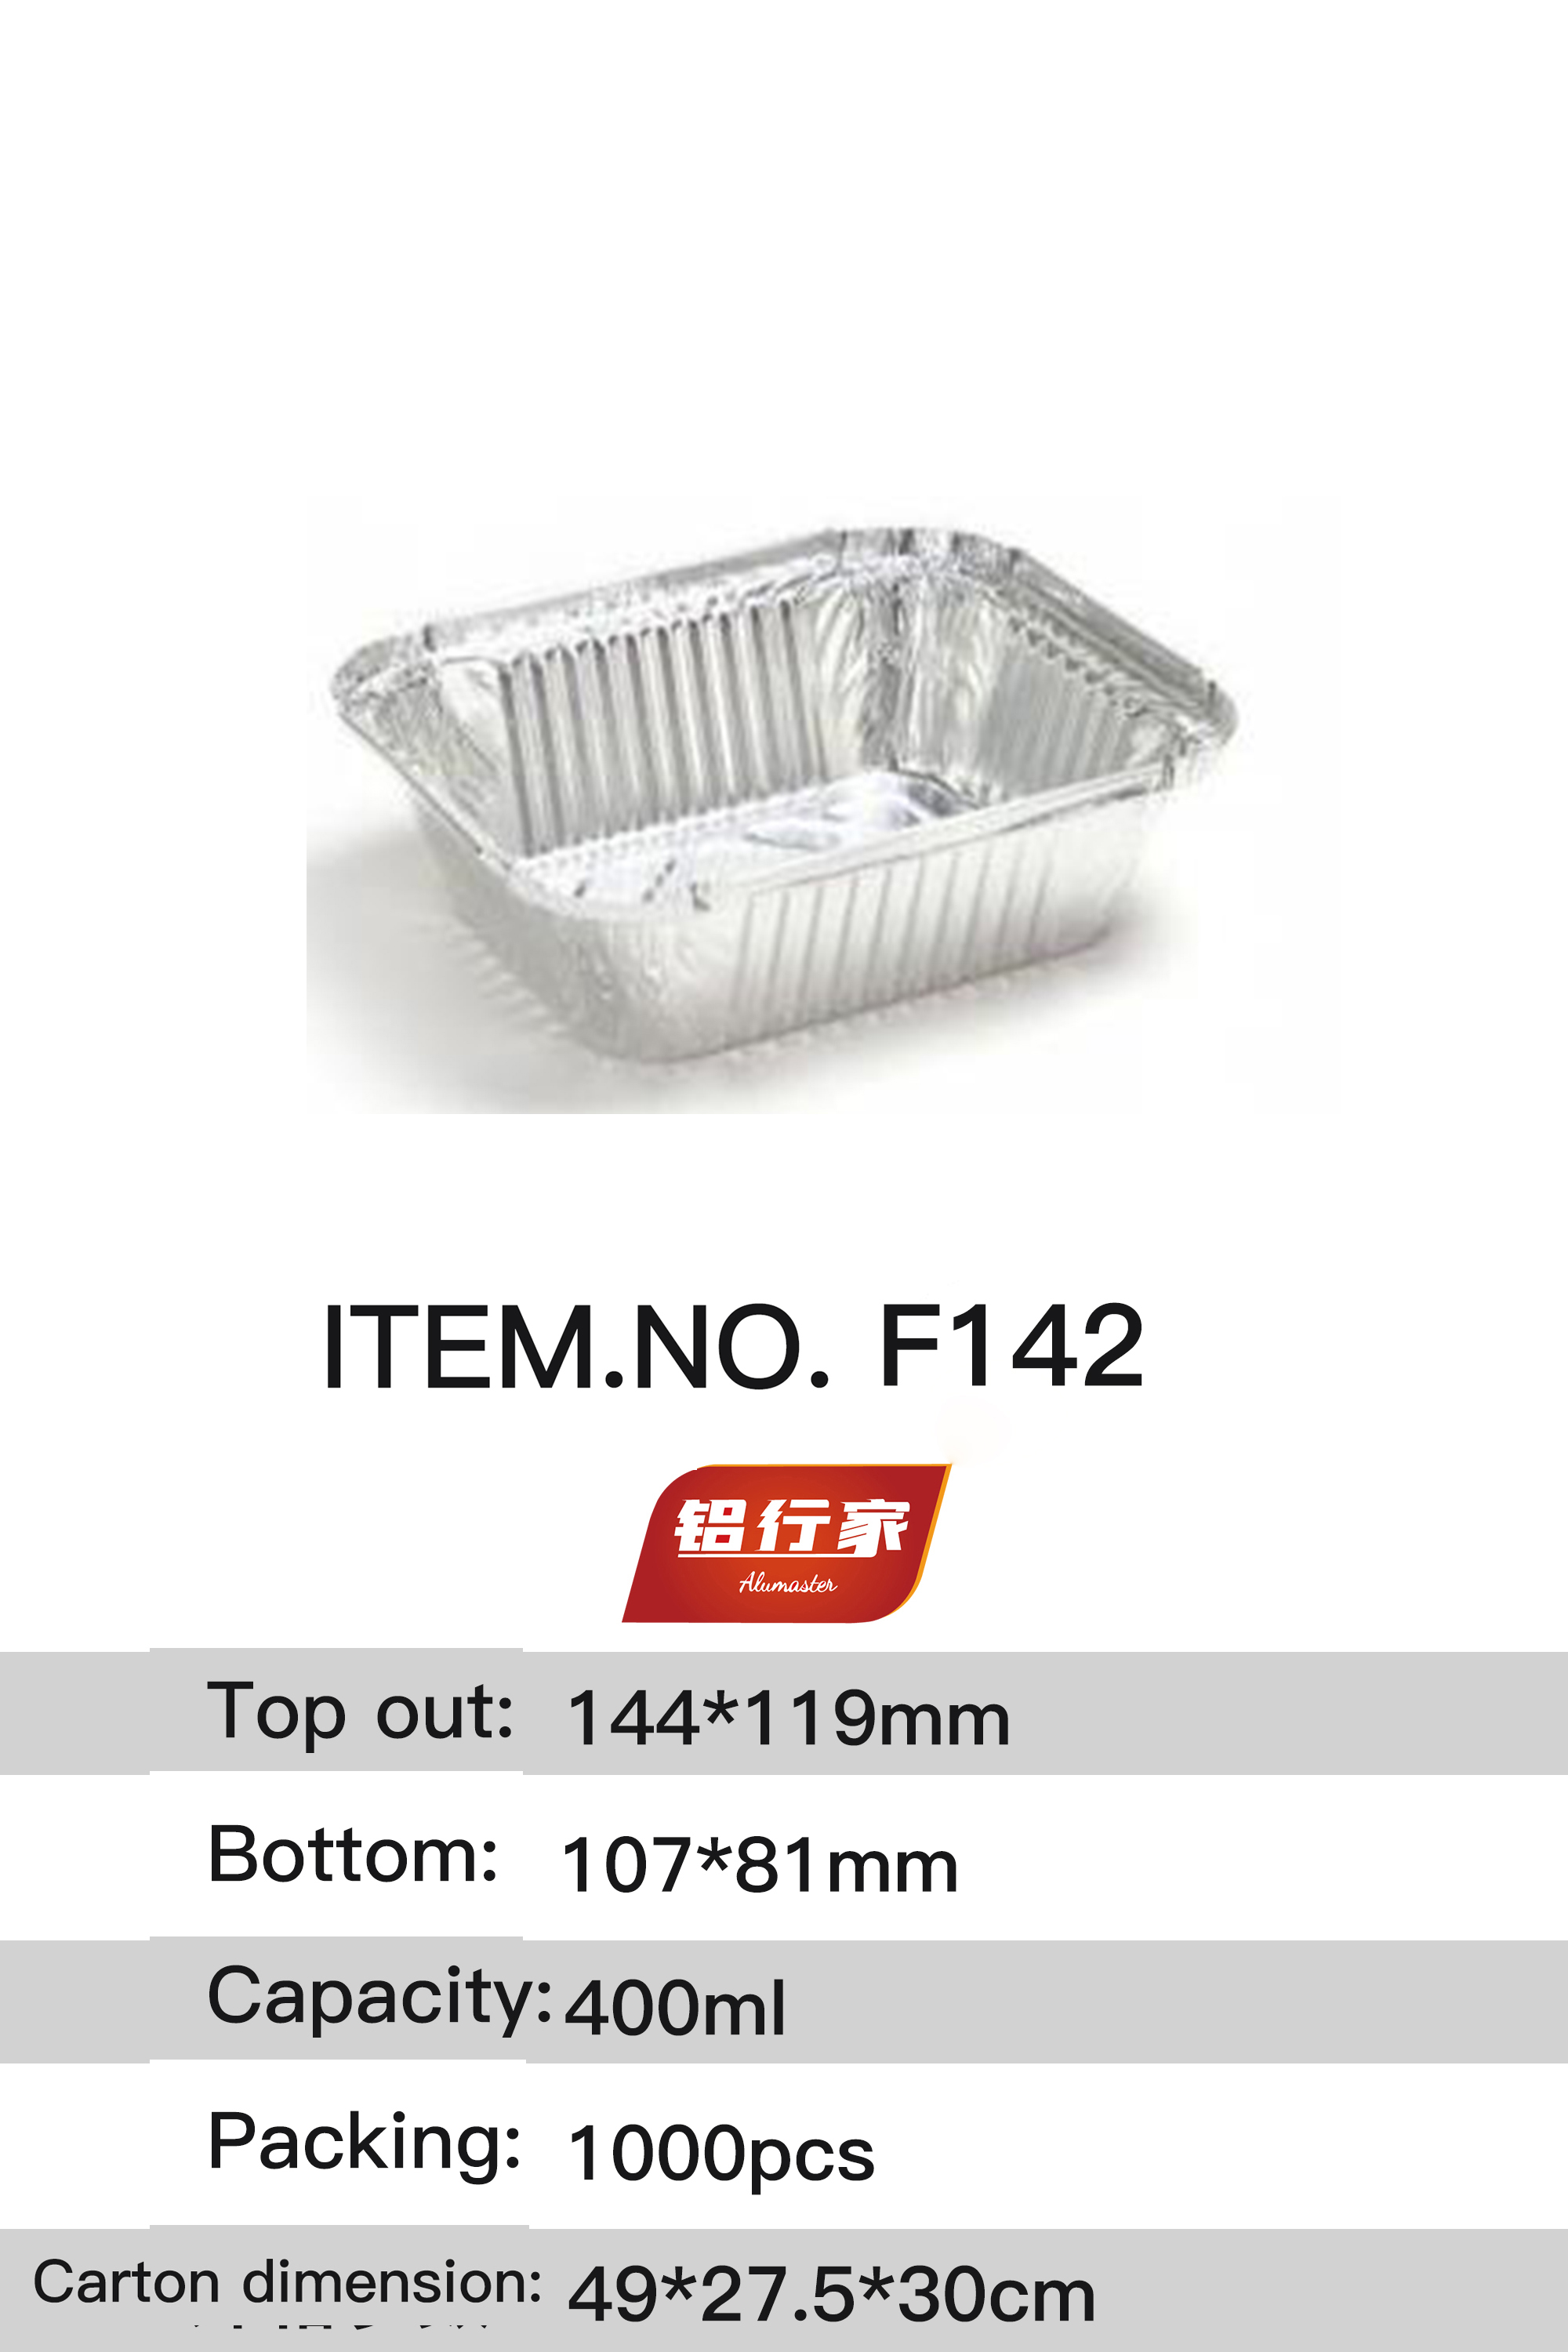 铝行家铝箔餐盒F142